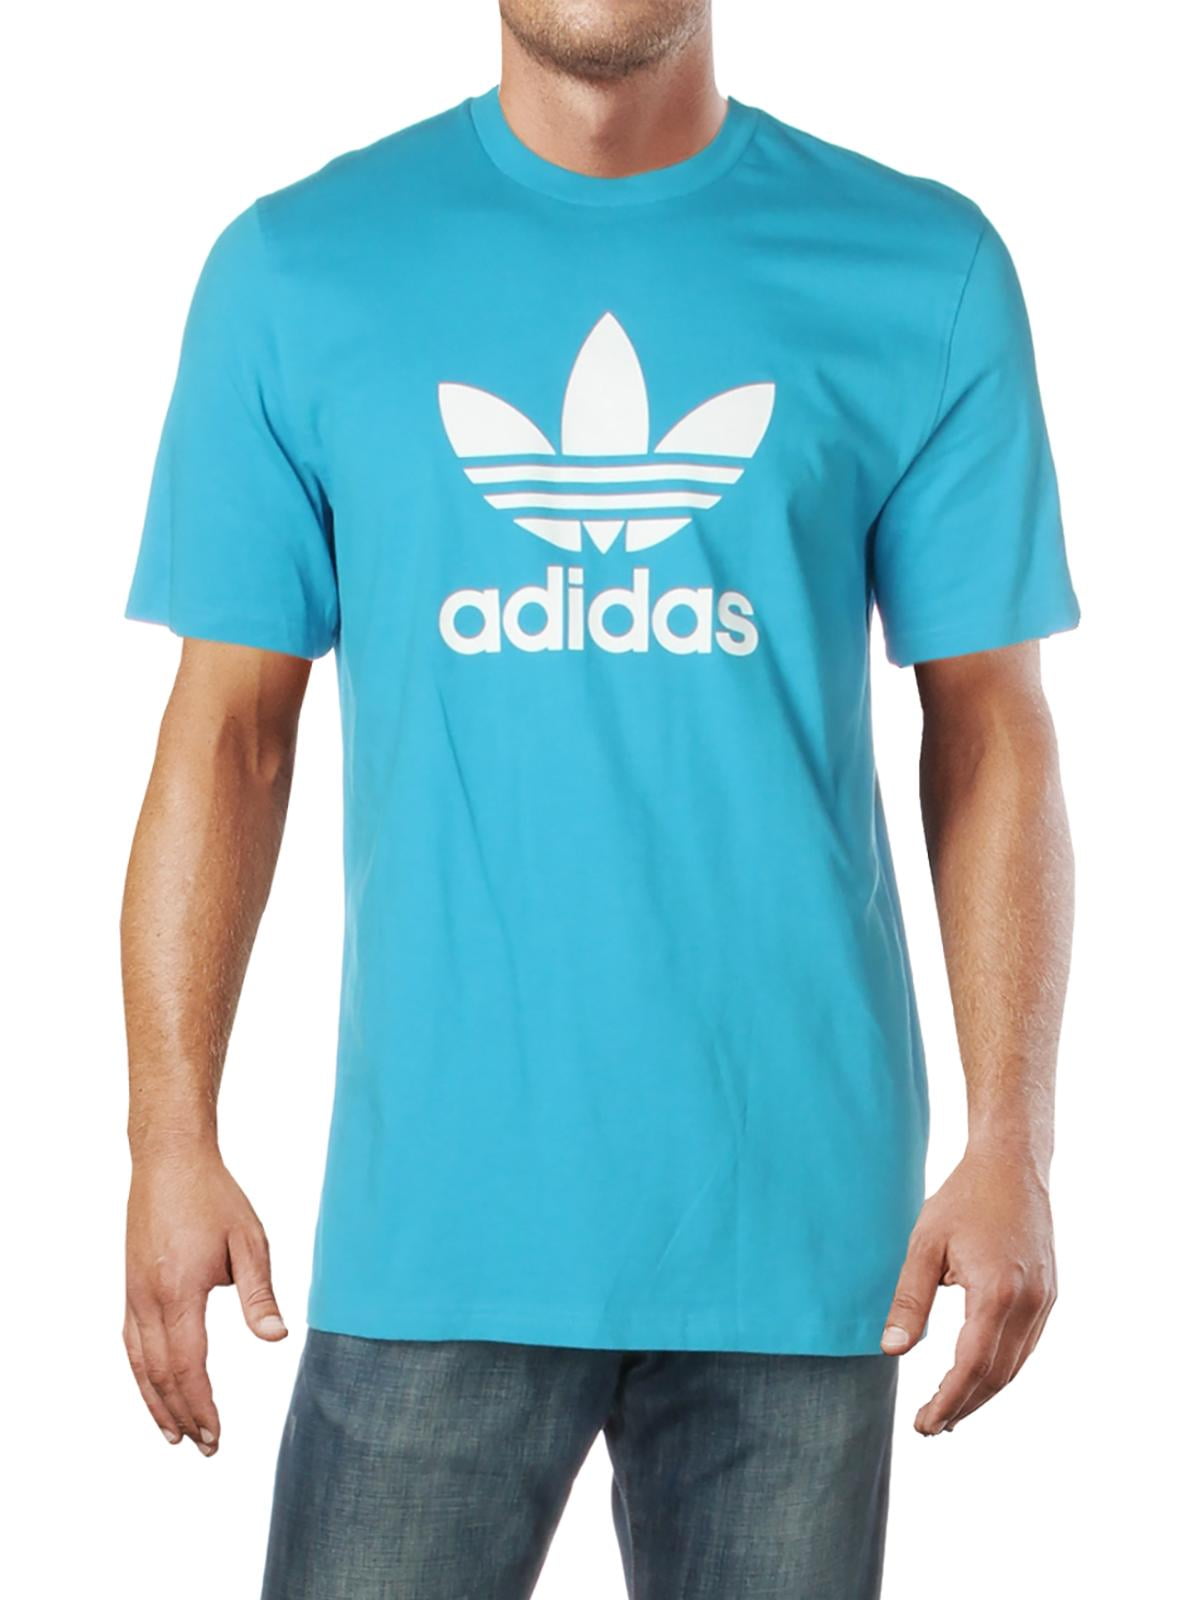 Футболка adidas Originals мужская. Адидас simple. Adidas t Shirt. Футболка adidas Moscow Trefoil 2.0. Адидас жив